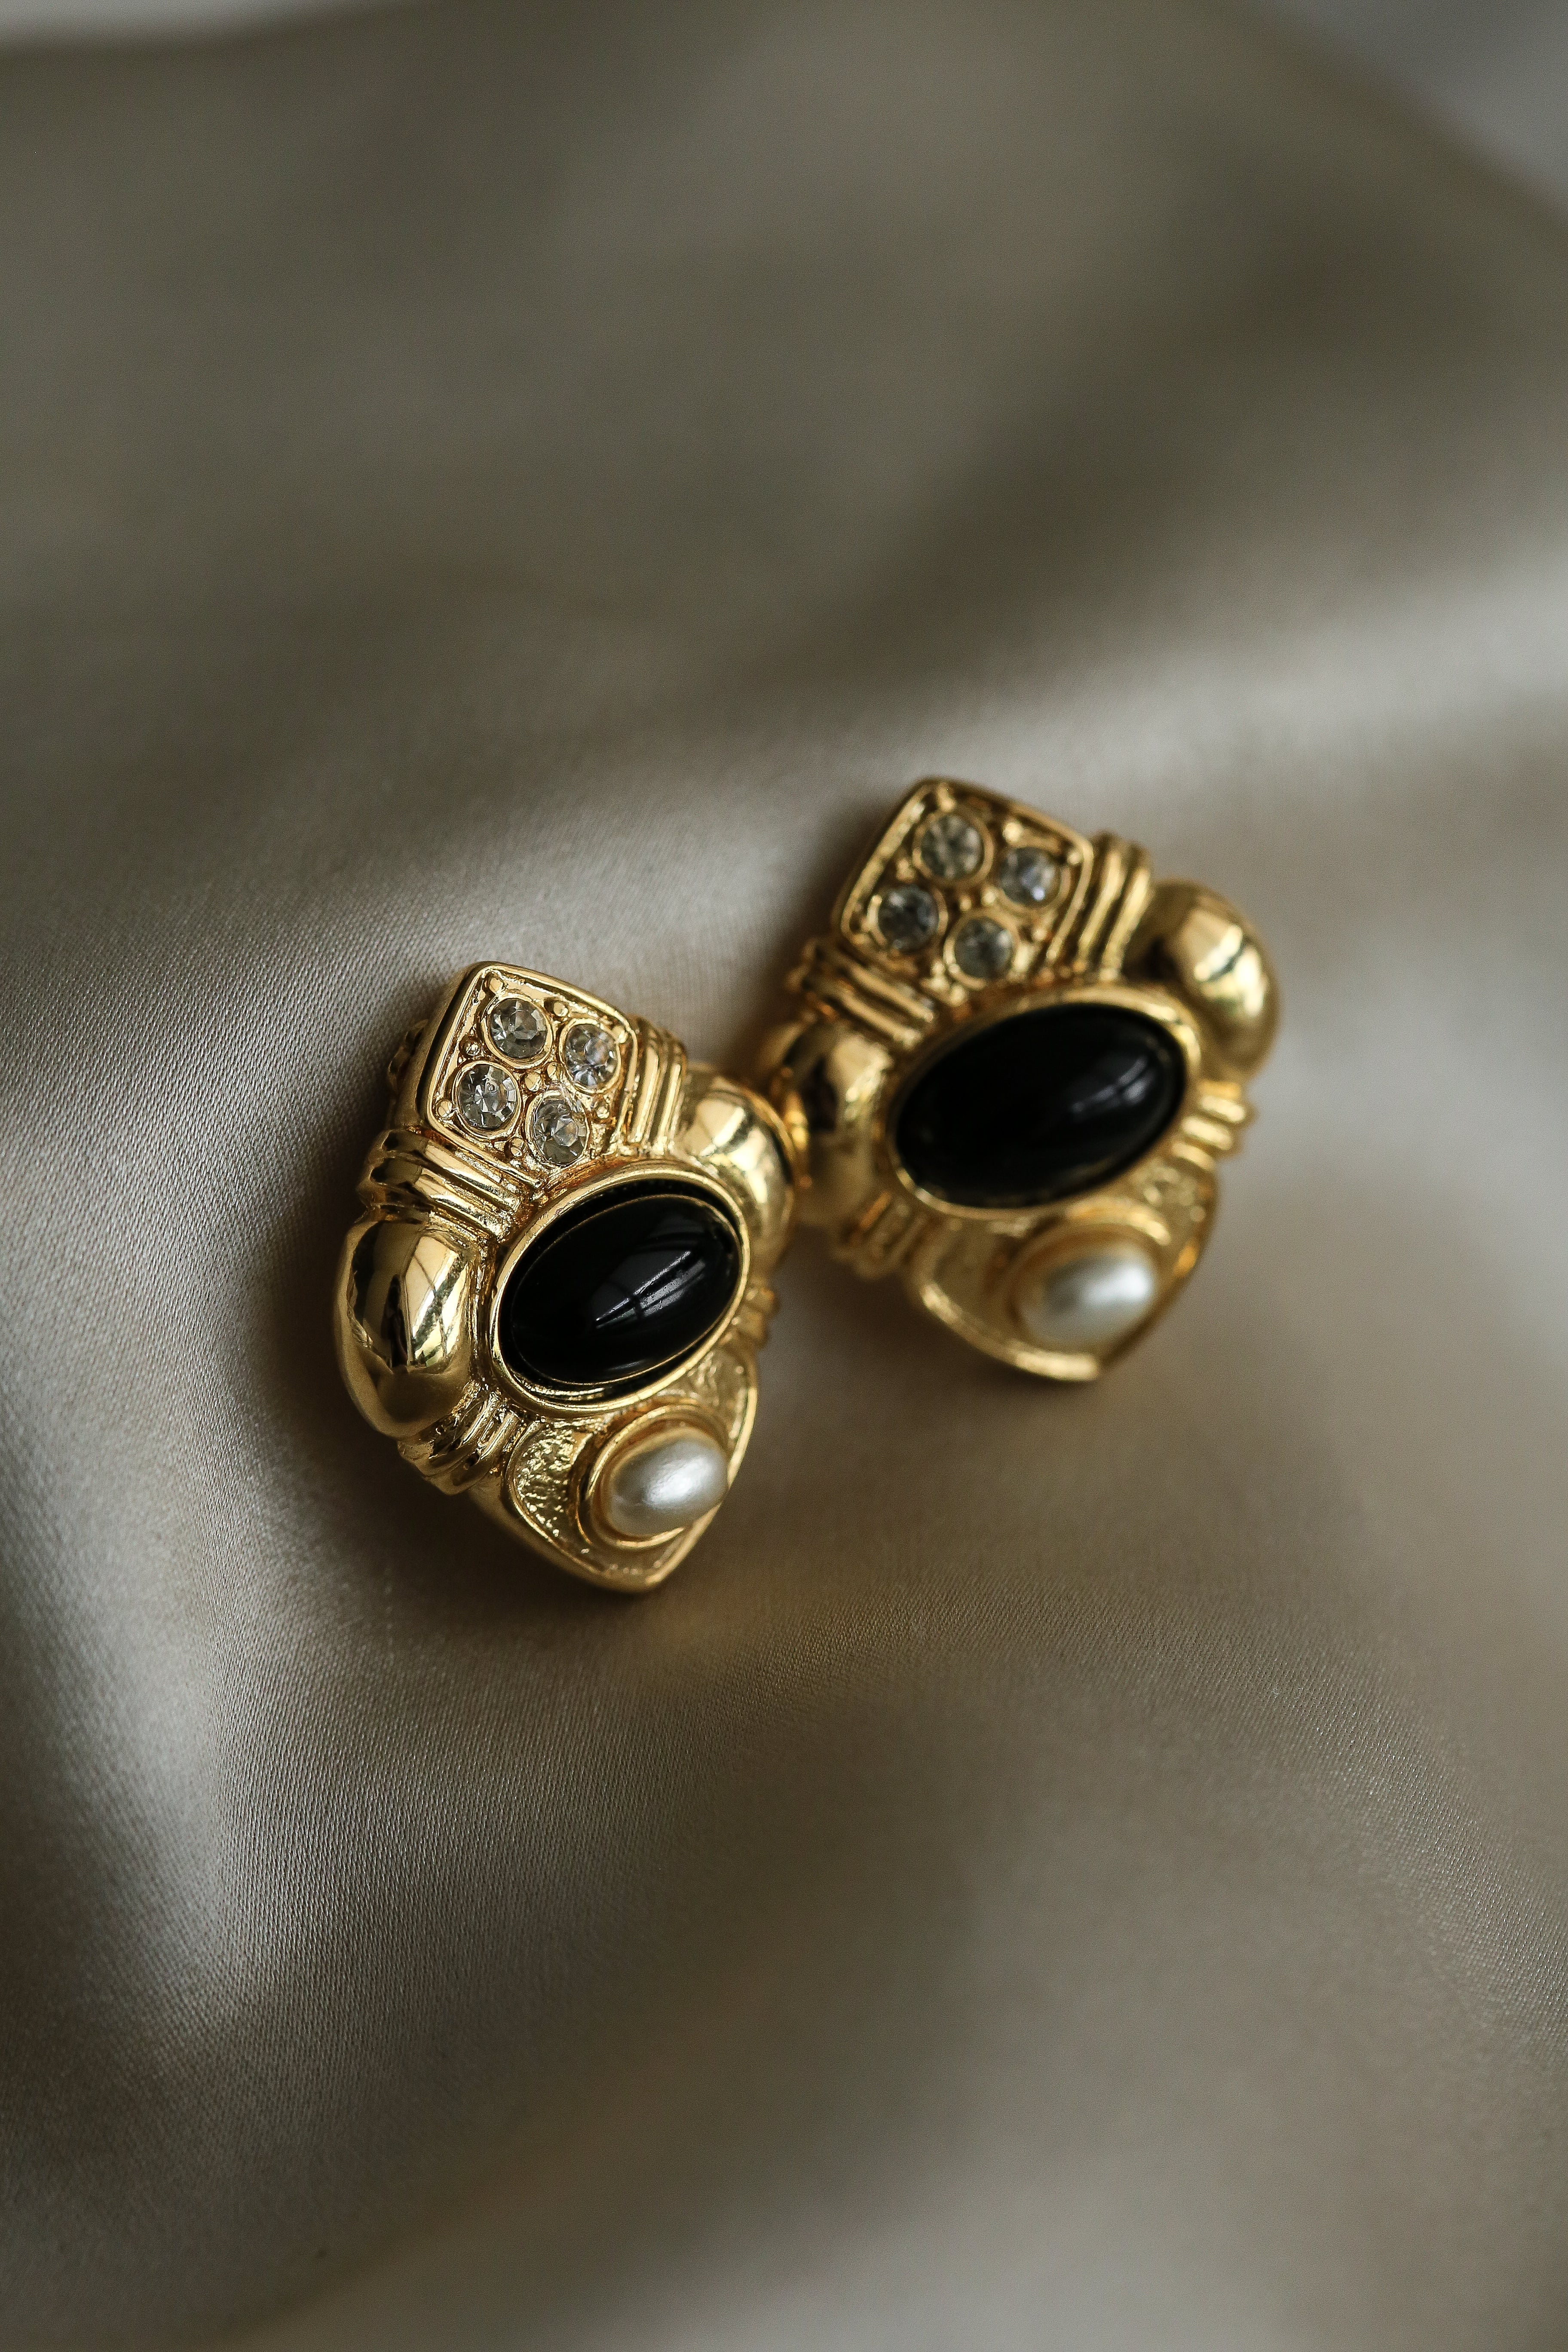 Pauline (Vintage) Earrings - Boutique Minimaliste has waterproof, durable, elegant and vintage inspired jewelry